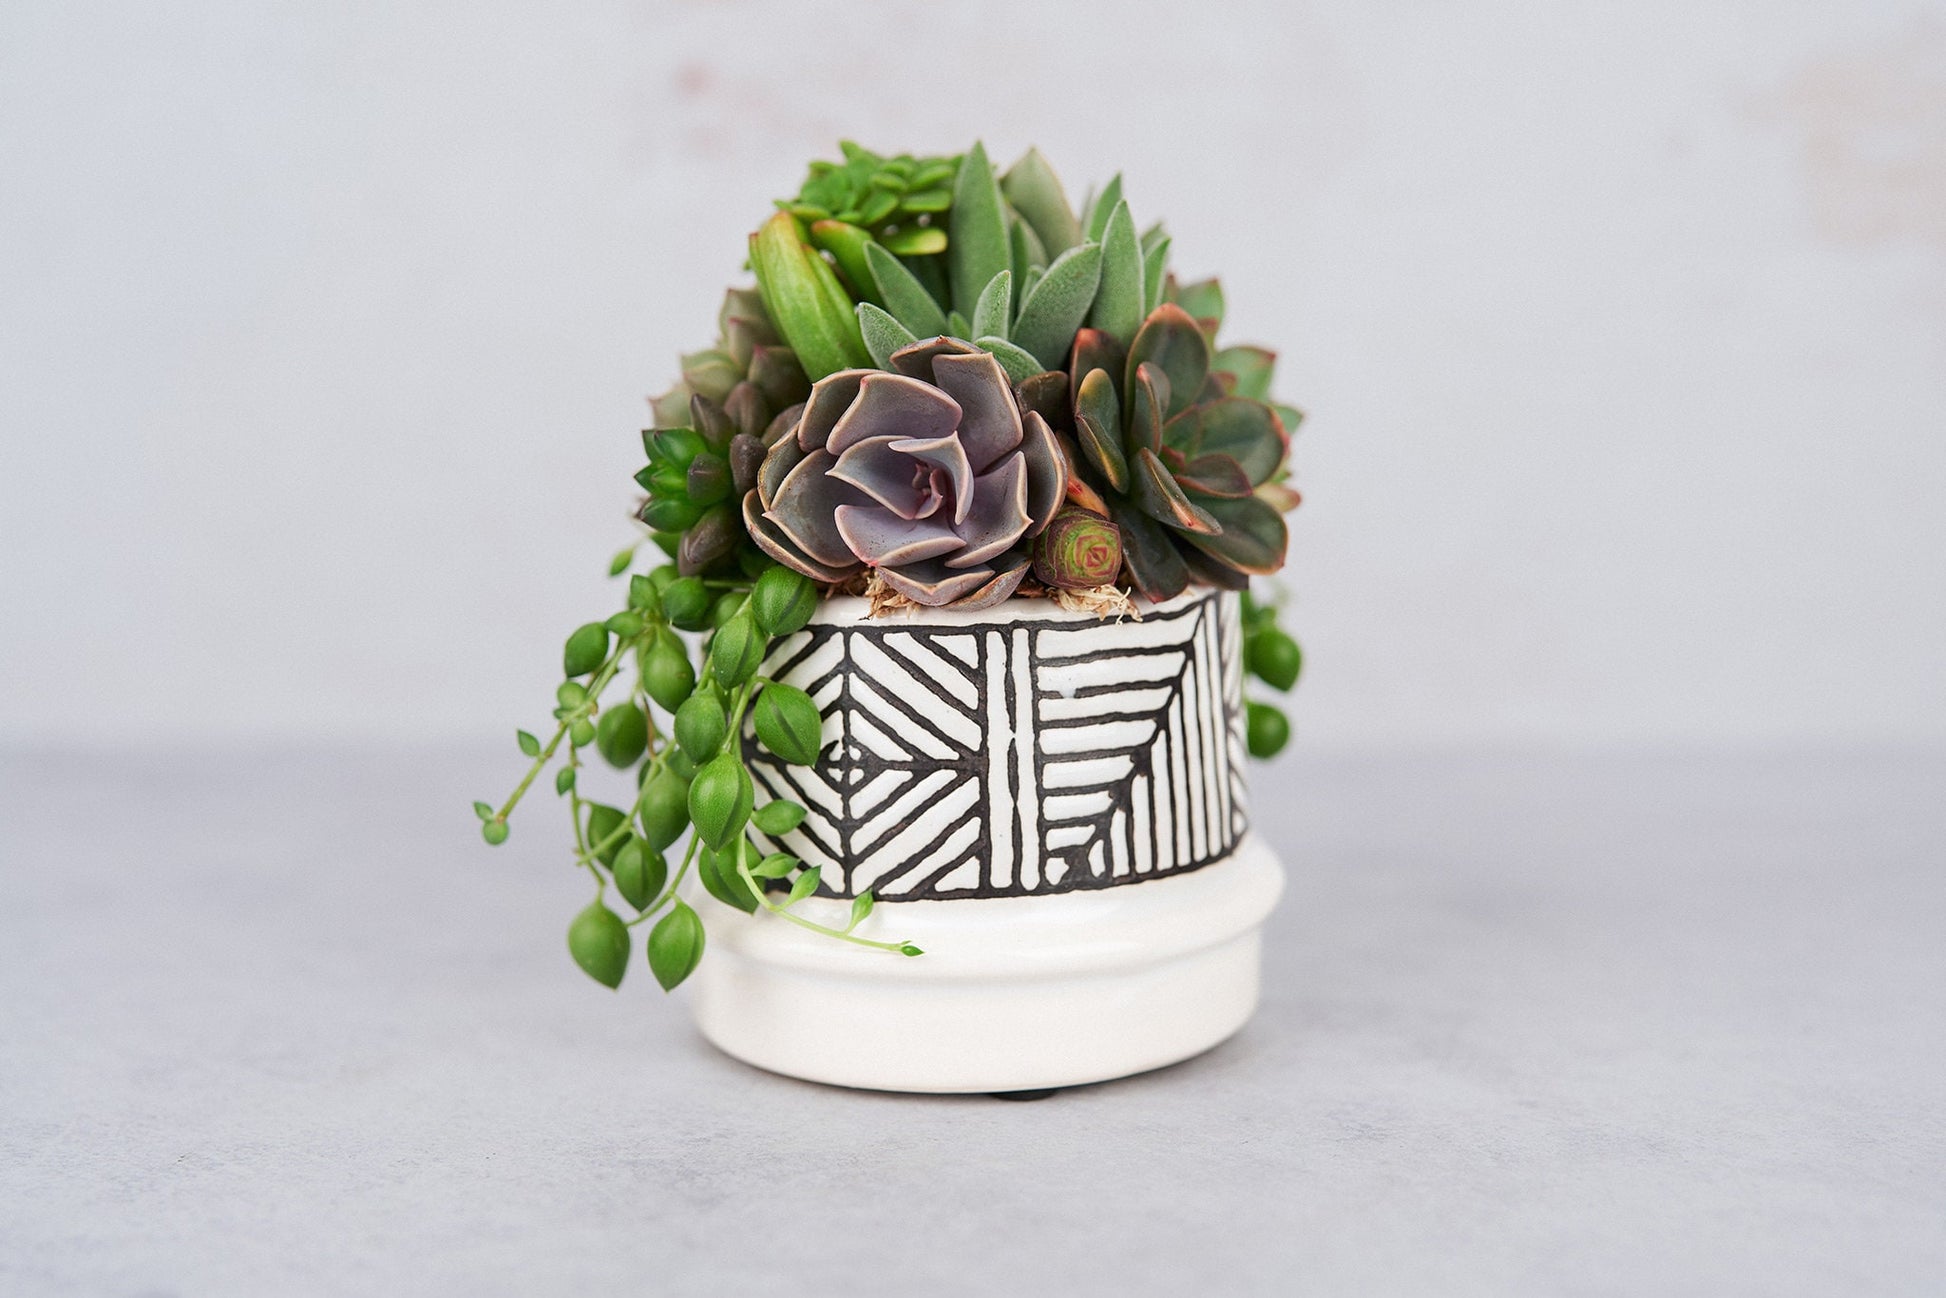 Small Art Succulent Arrangement Planter: Modern Living Succulent Gift, Centerpiece for Weddings & Events, Housewarming Gift